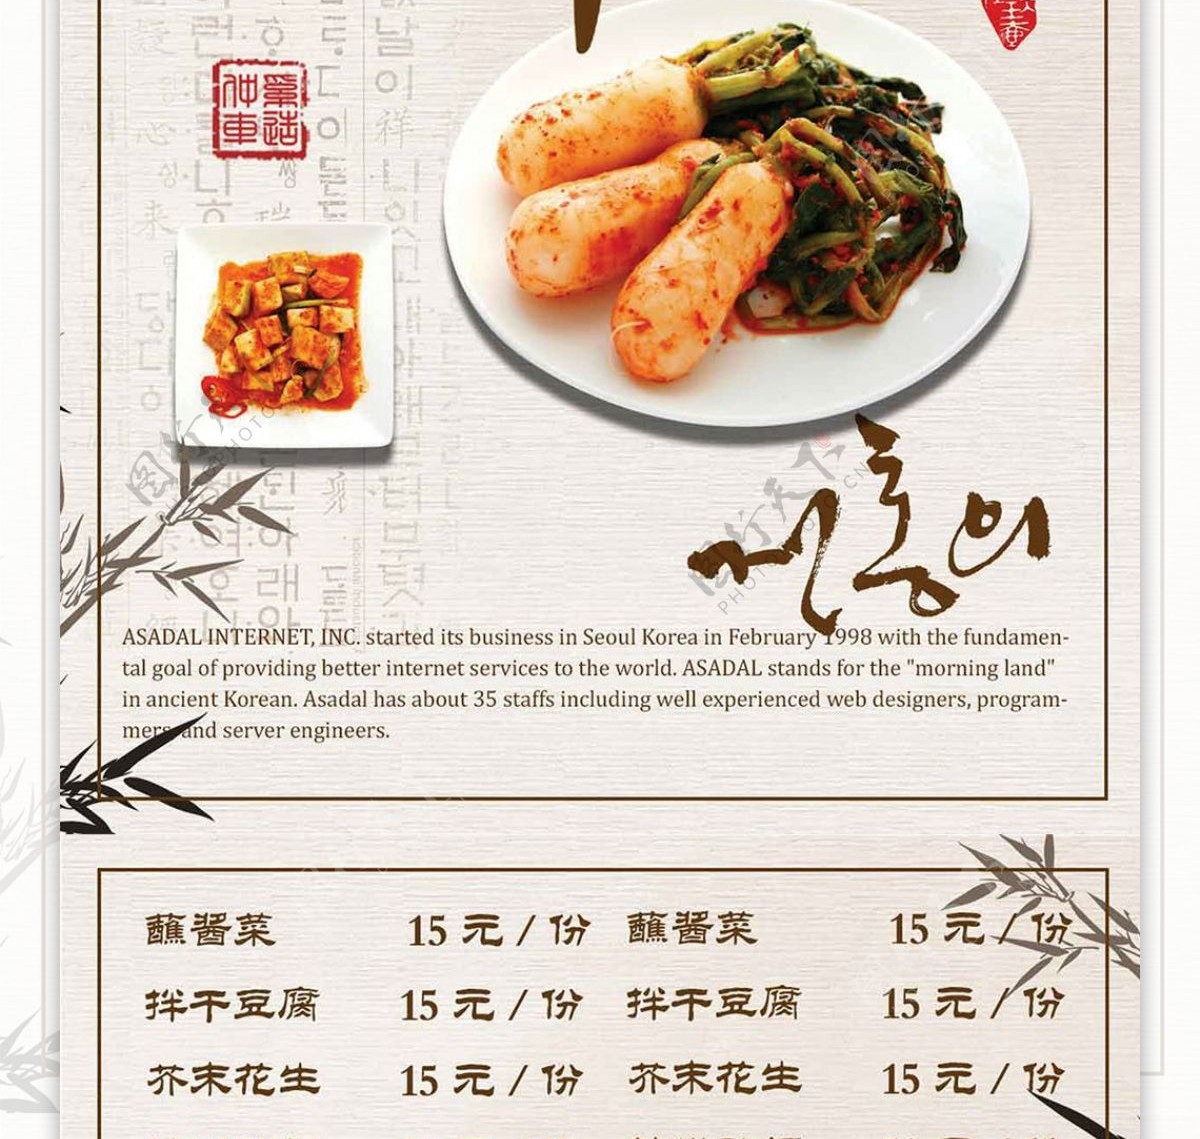 黄色简约中国风韩国料理菜谱设计